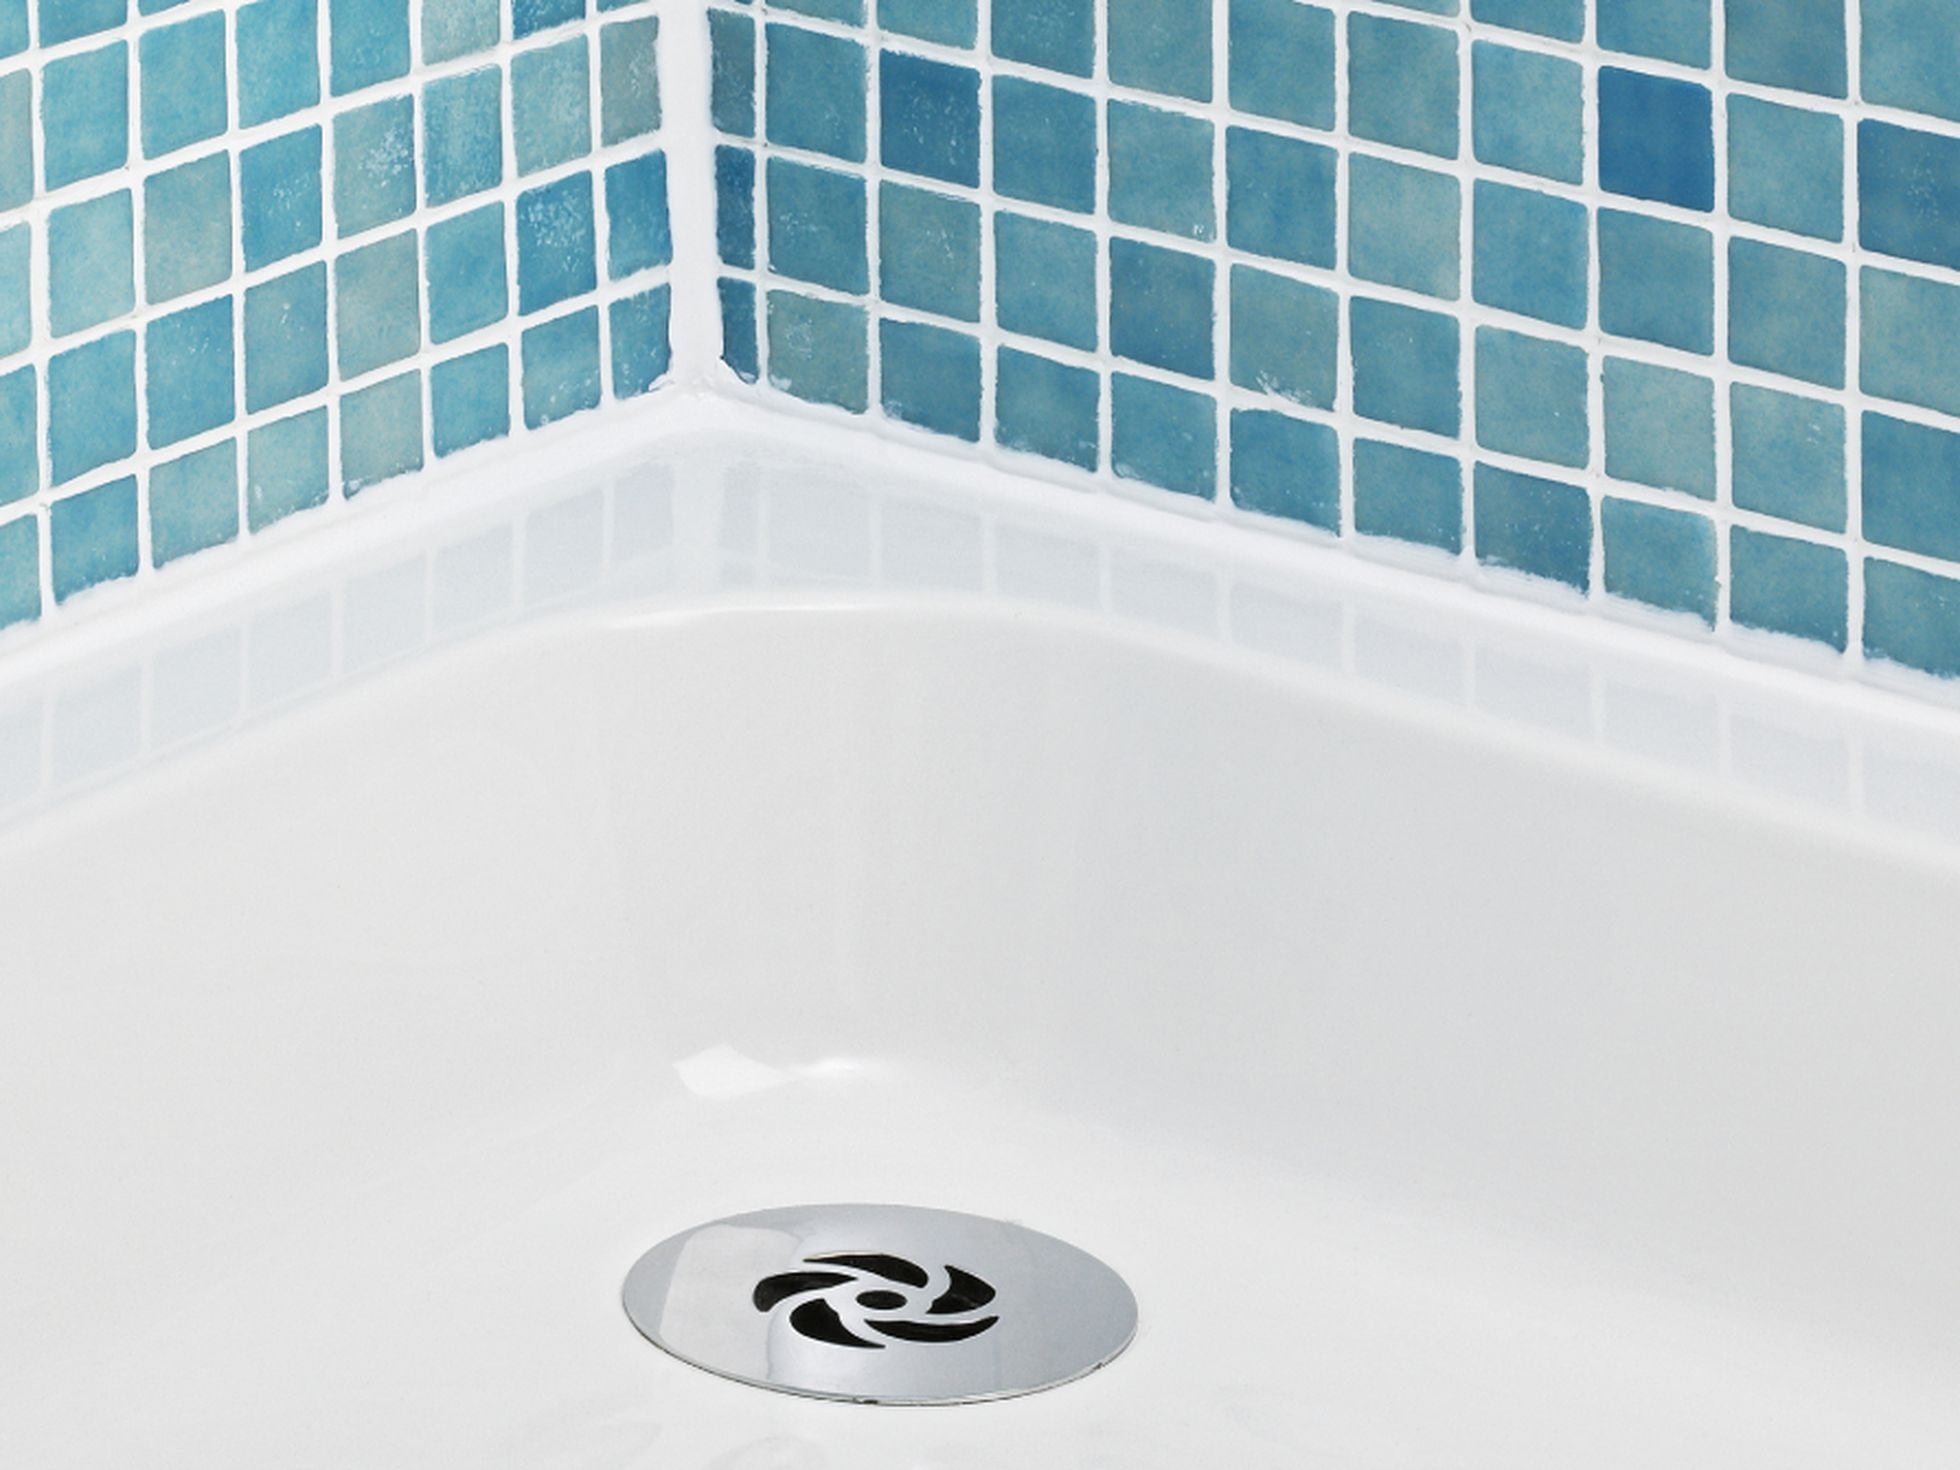 Cómo la humedad del baño y limpiar el moho de forma eficaz con estos productos básicos | Escaparate | EL PAÍS